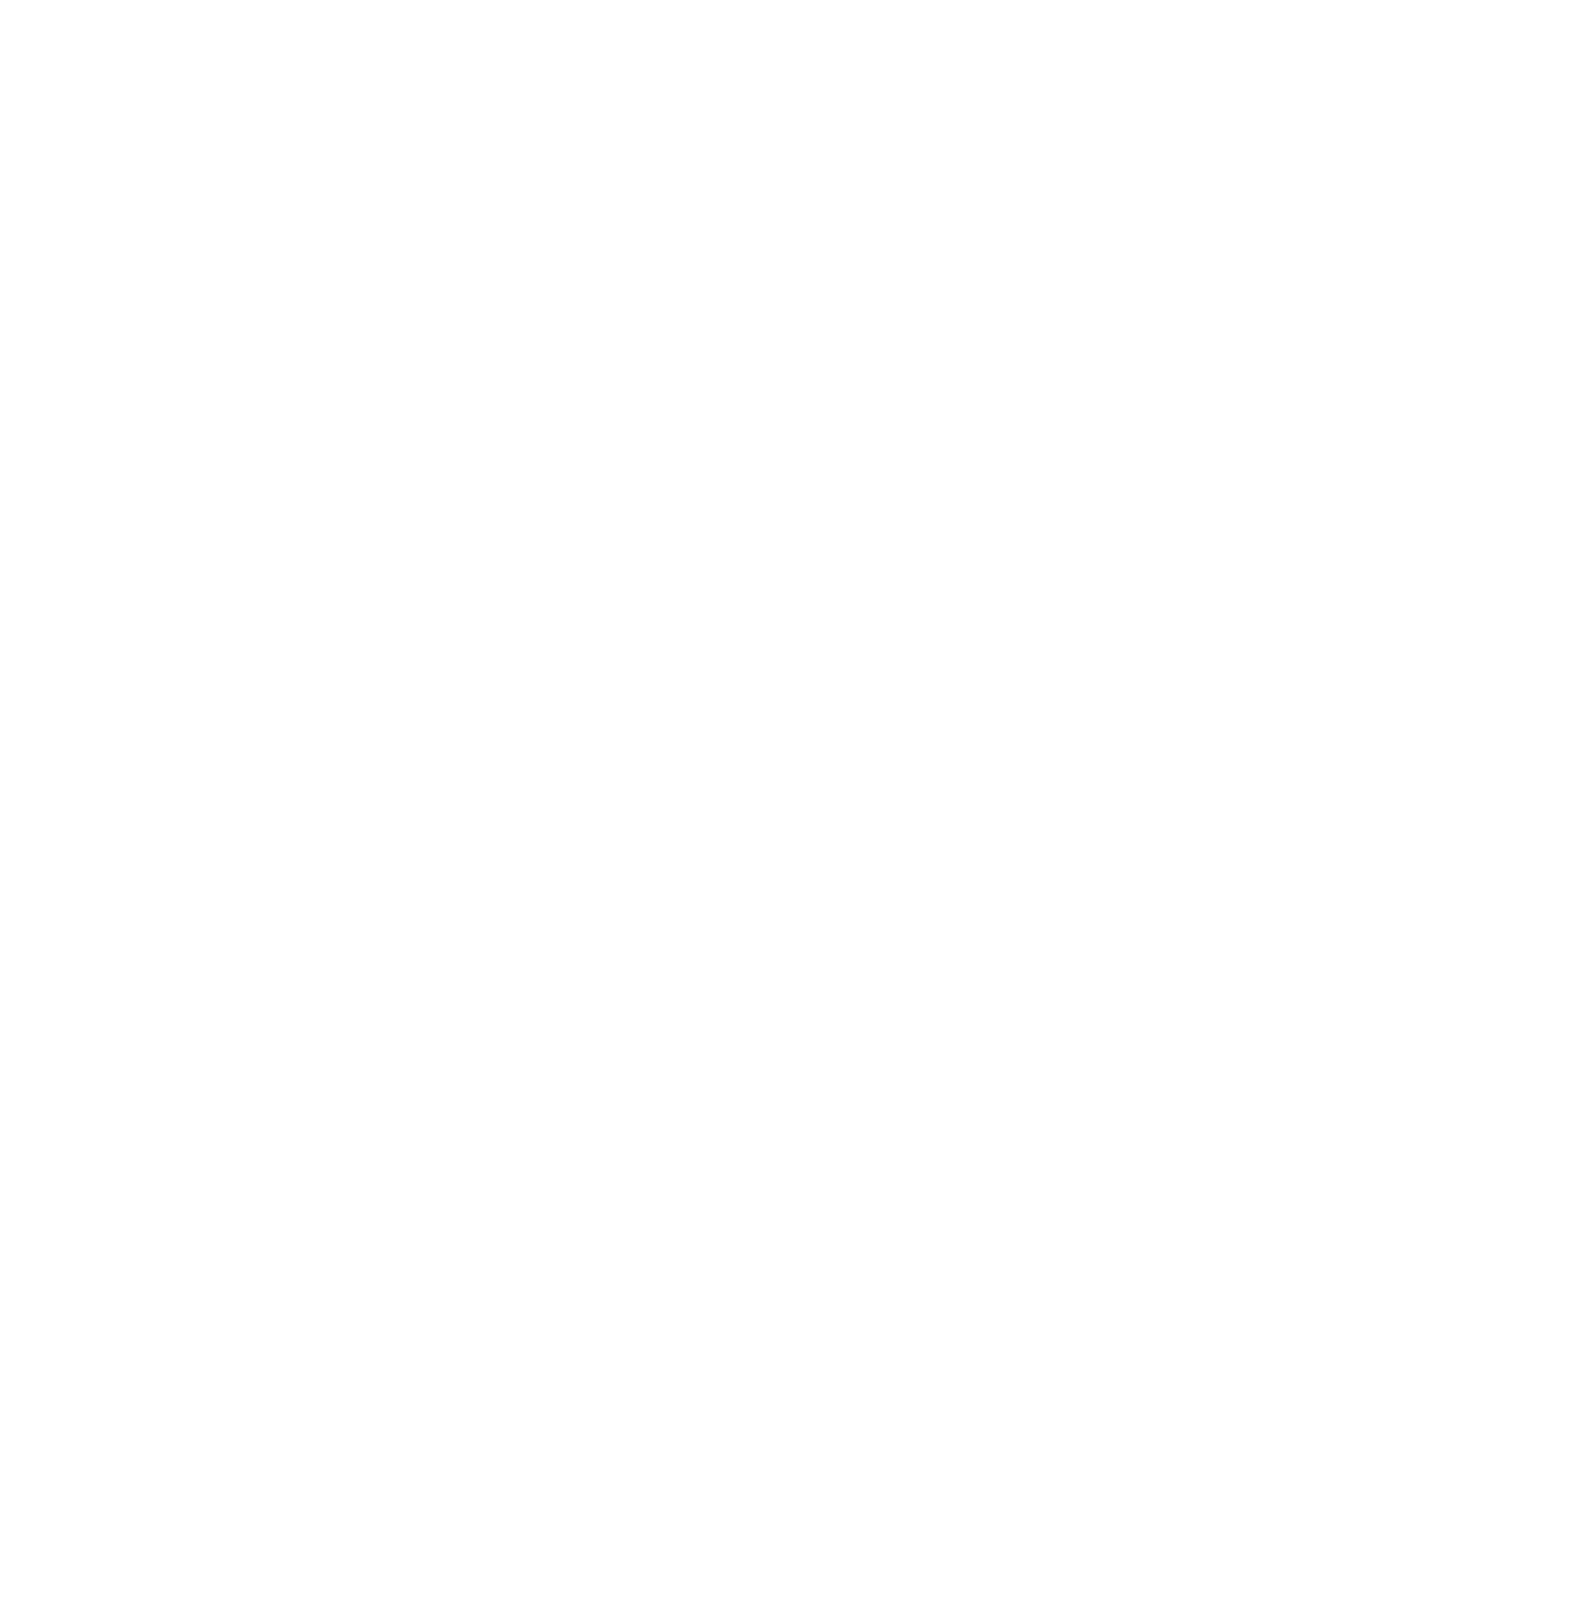 Sonendo logo pour fonds sombres (PNG transparent)